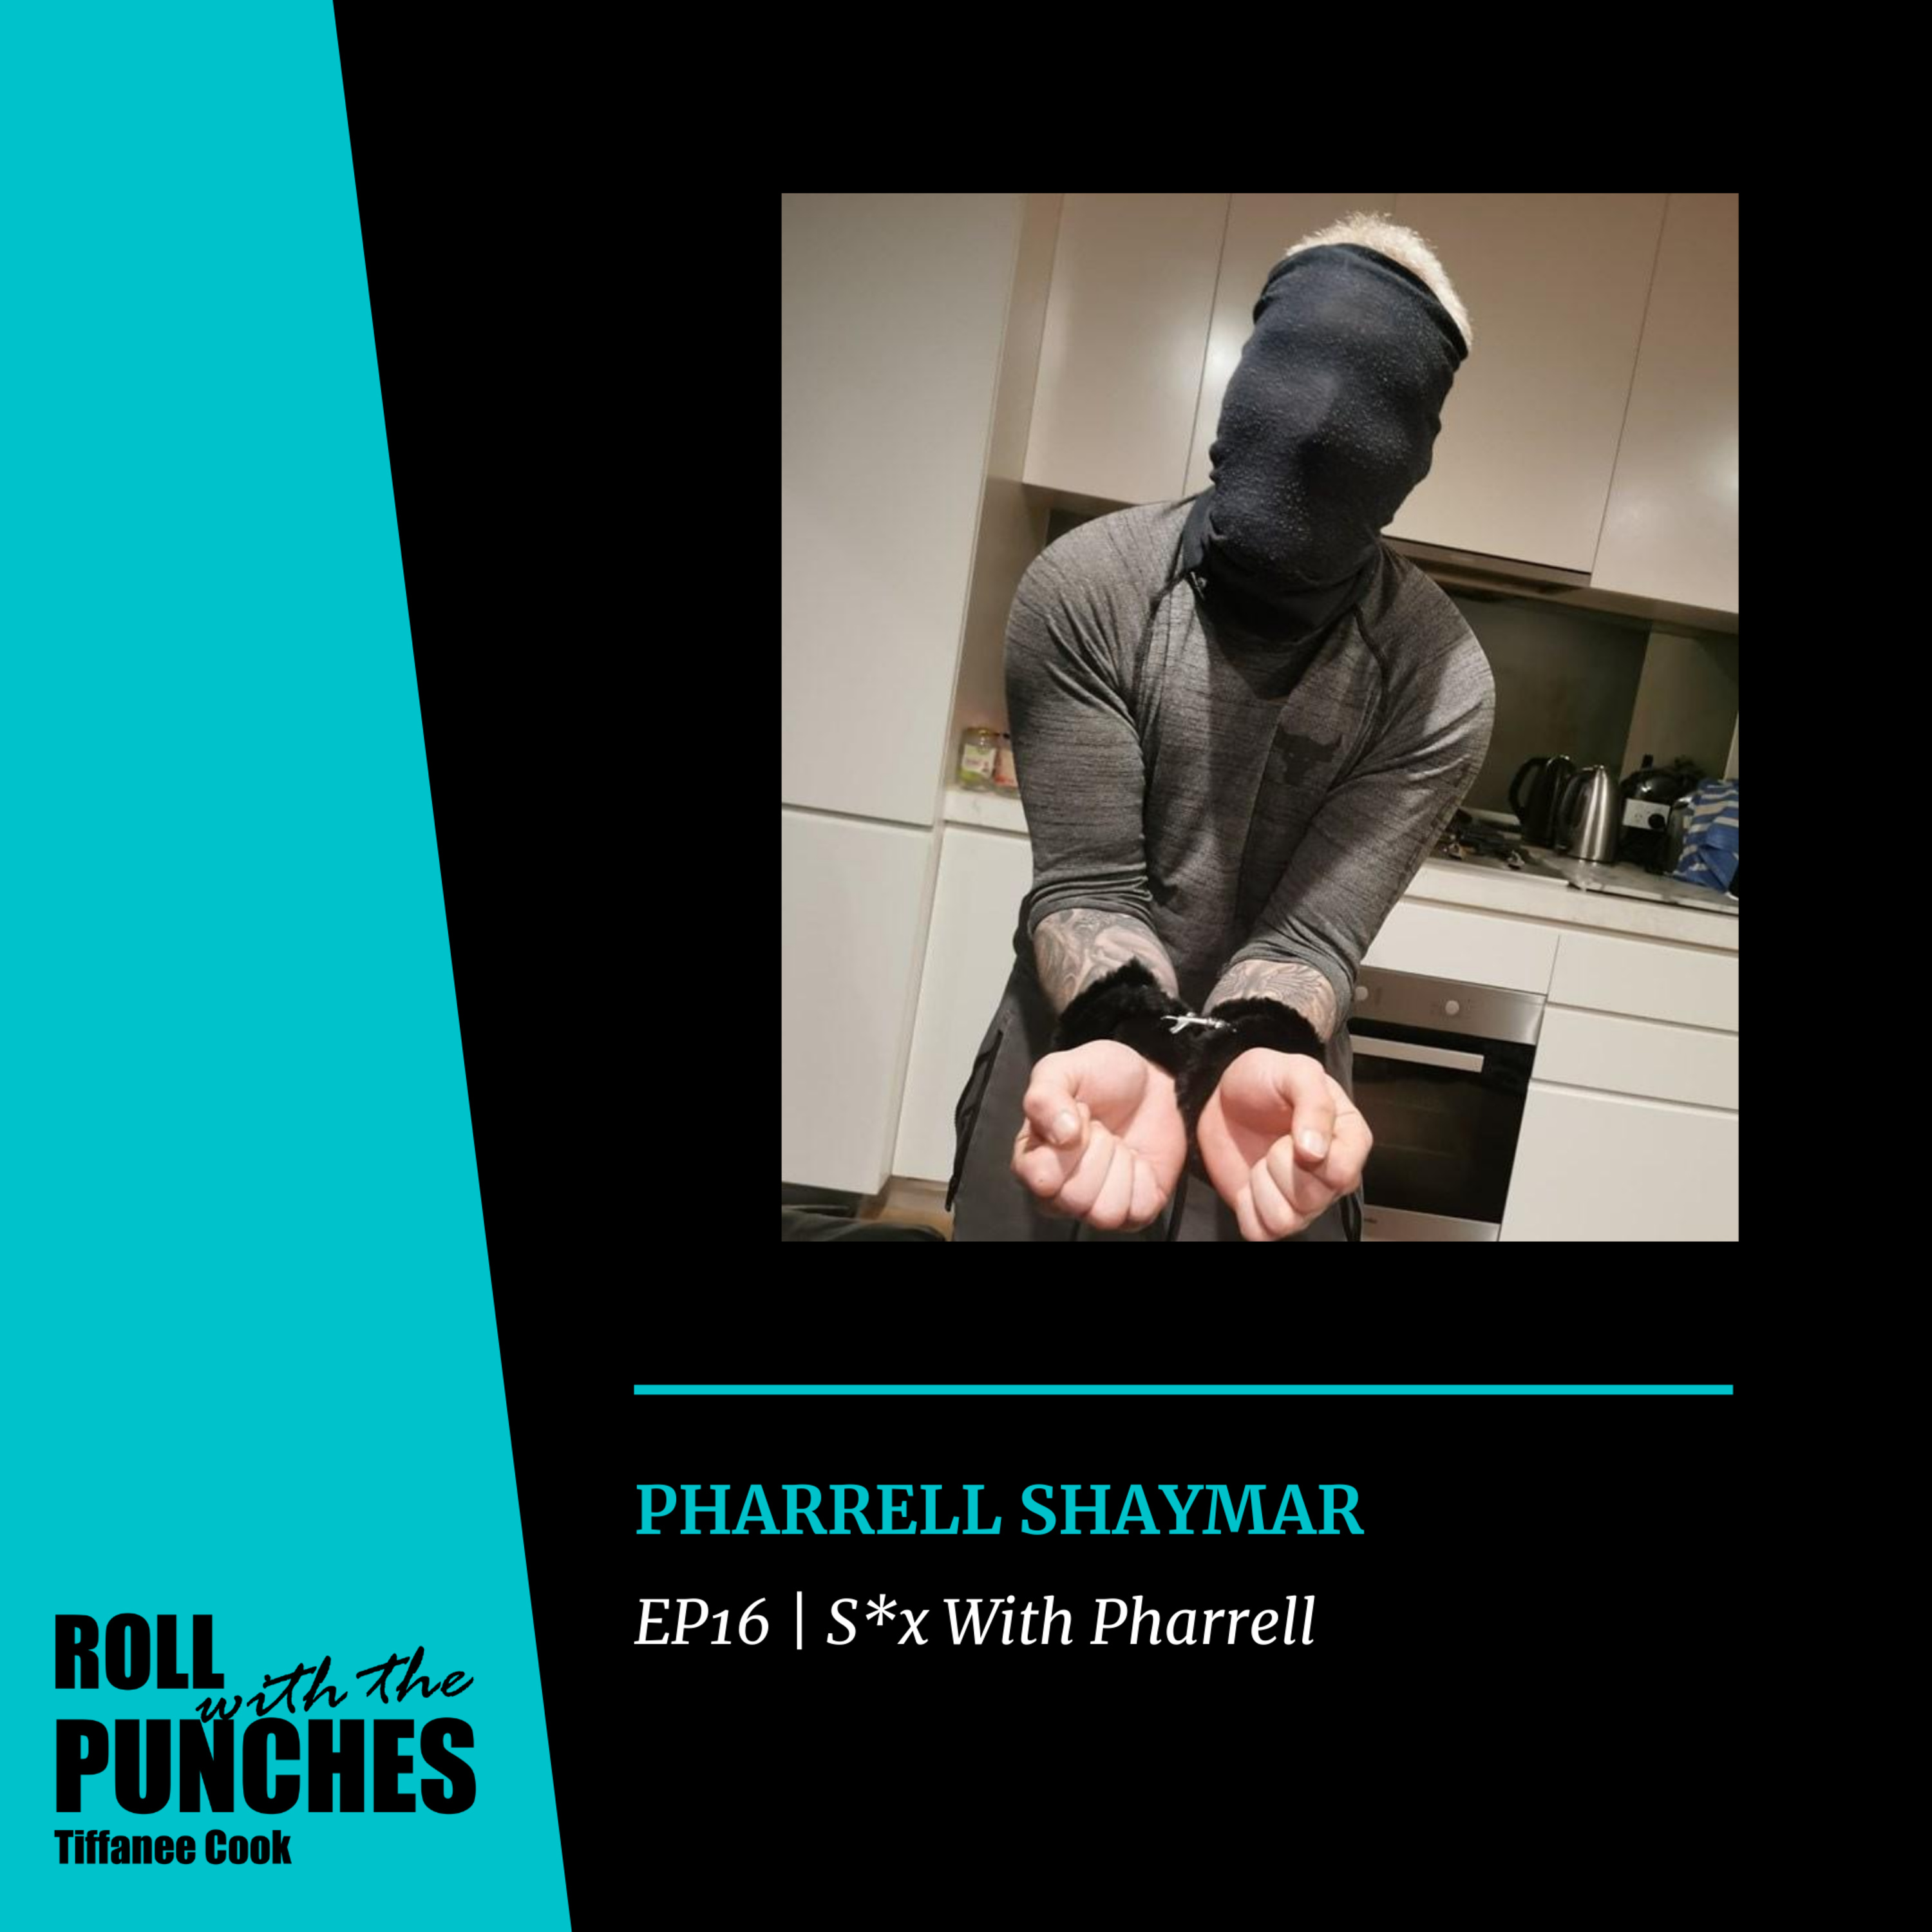 EP16 S*x With Pharrell | Pharrell Shaymar